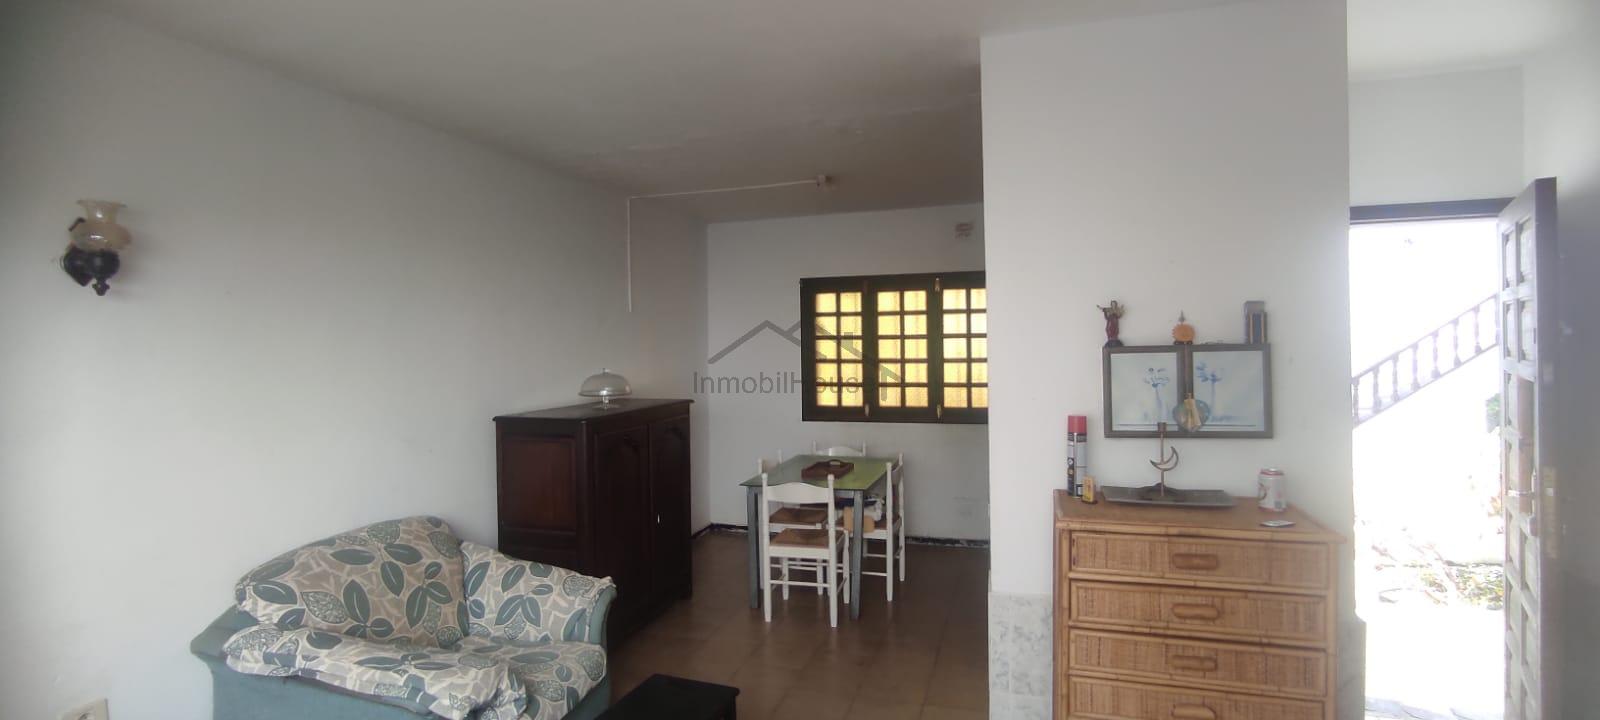 Verkoop van duplex appartement in Costa del Silencio